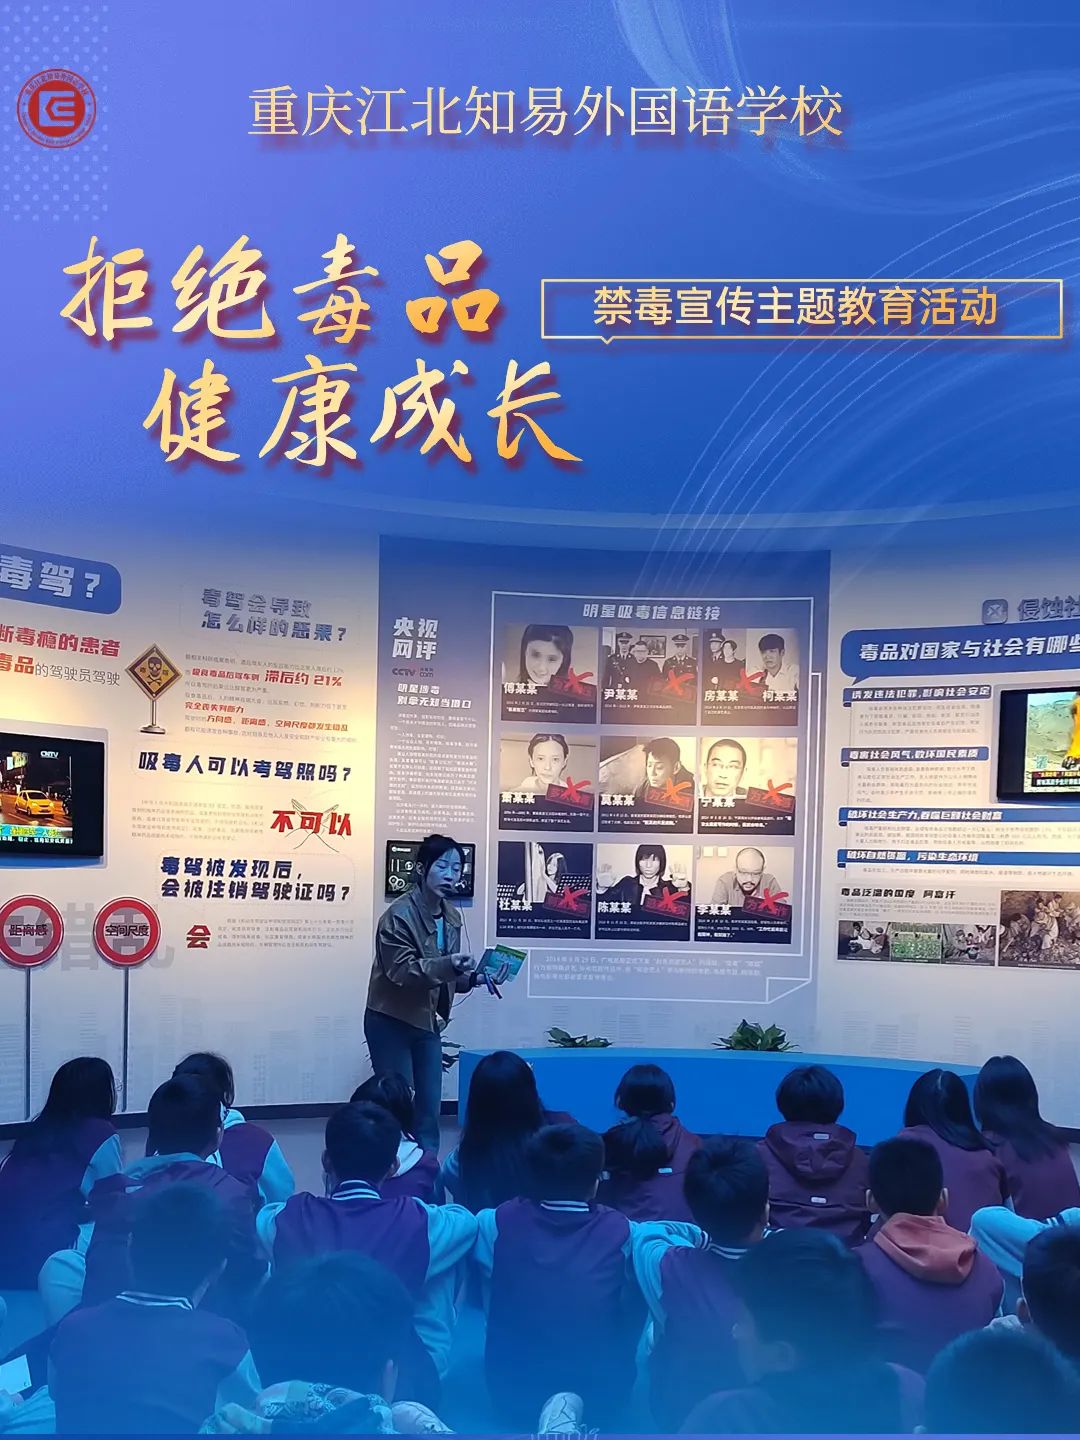 拒绝毒品 健康成长 | 重庆江北知易外国语学校毒品预防教育主题活动(图8)